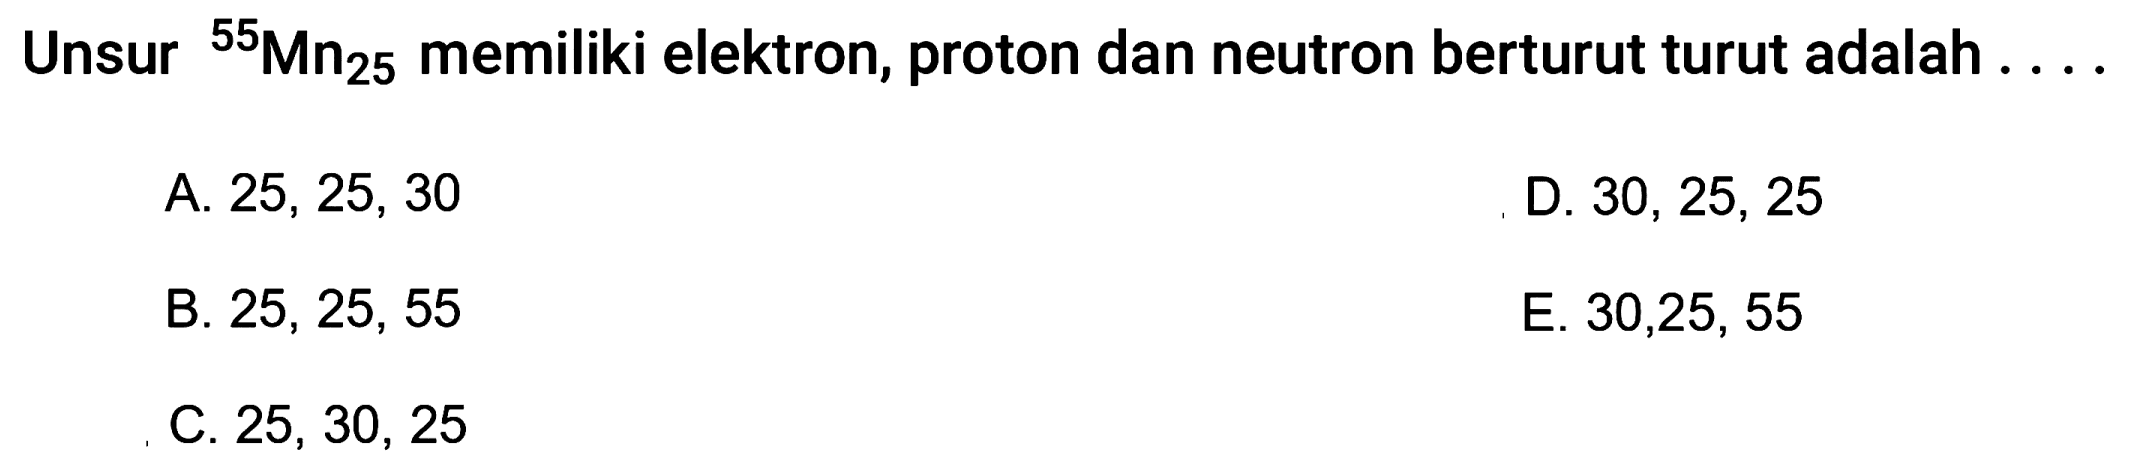 Unsur   ^55 Mn25 memiliki elektron, proton dan neutron berturut turut adalah  .... 
A. 25, 25, 30
D.  30,25,25 
B.  25,25,55 
E. 30,25, 55
C.  25,30,25 